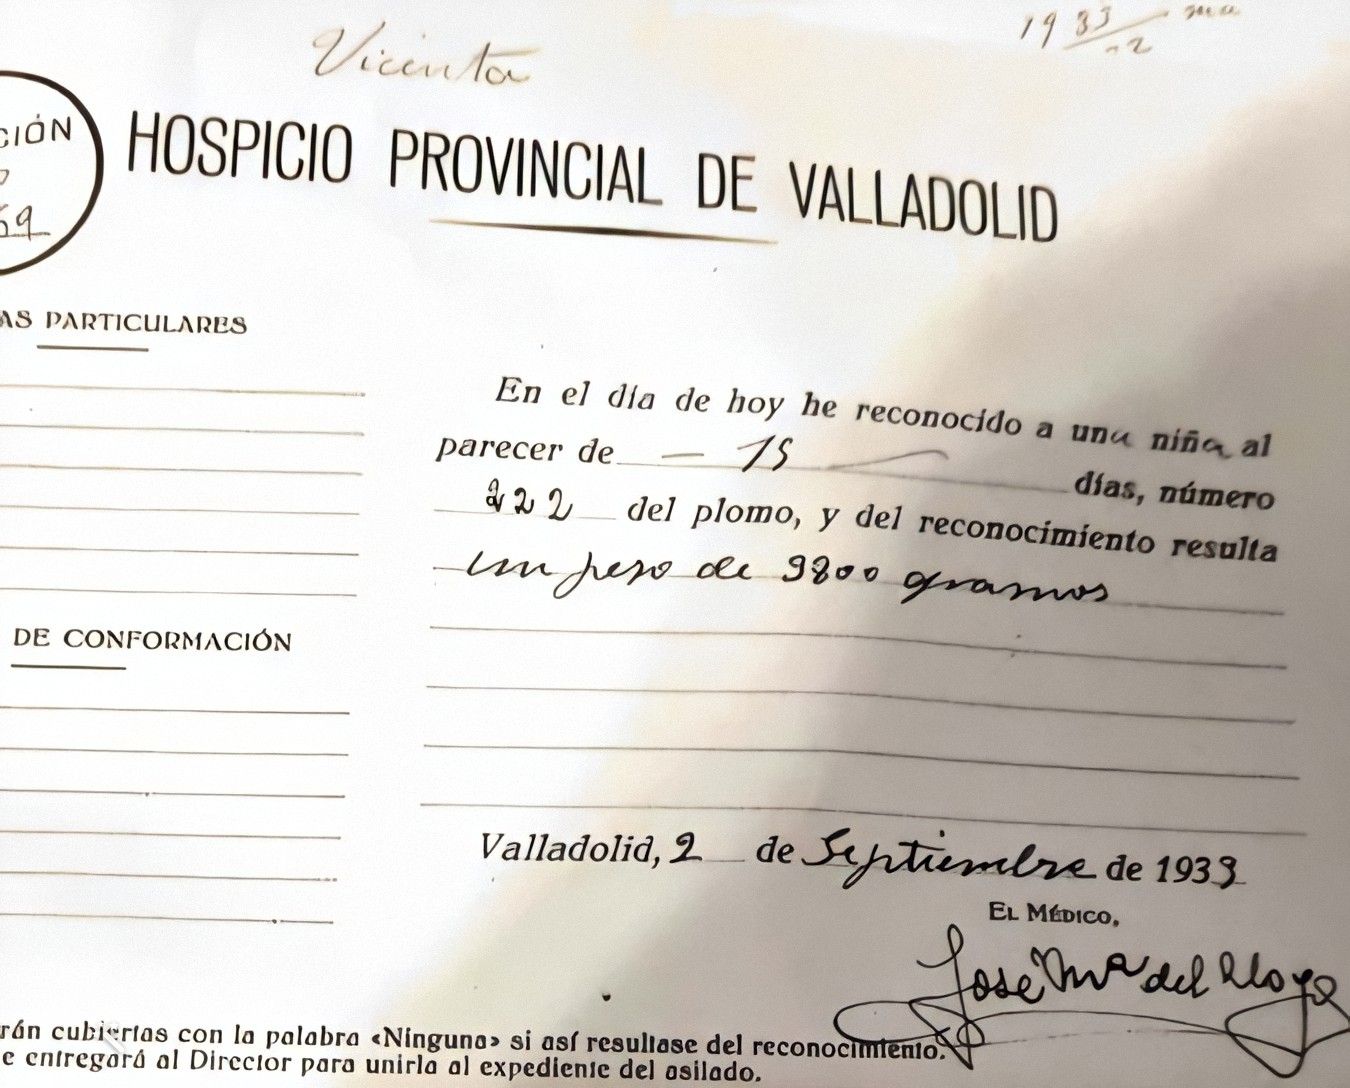 Hospicio Valladolid_Expósitos